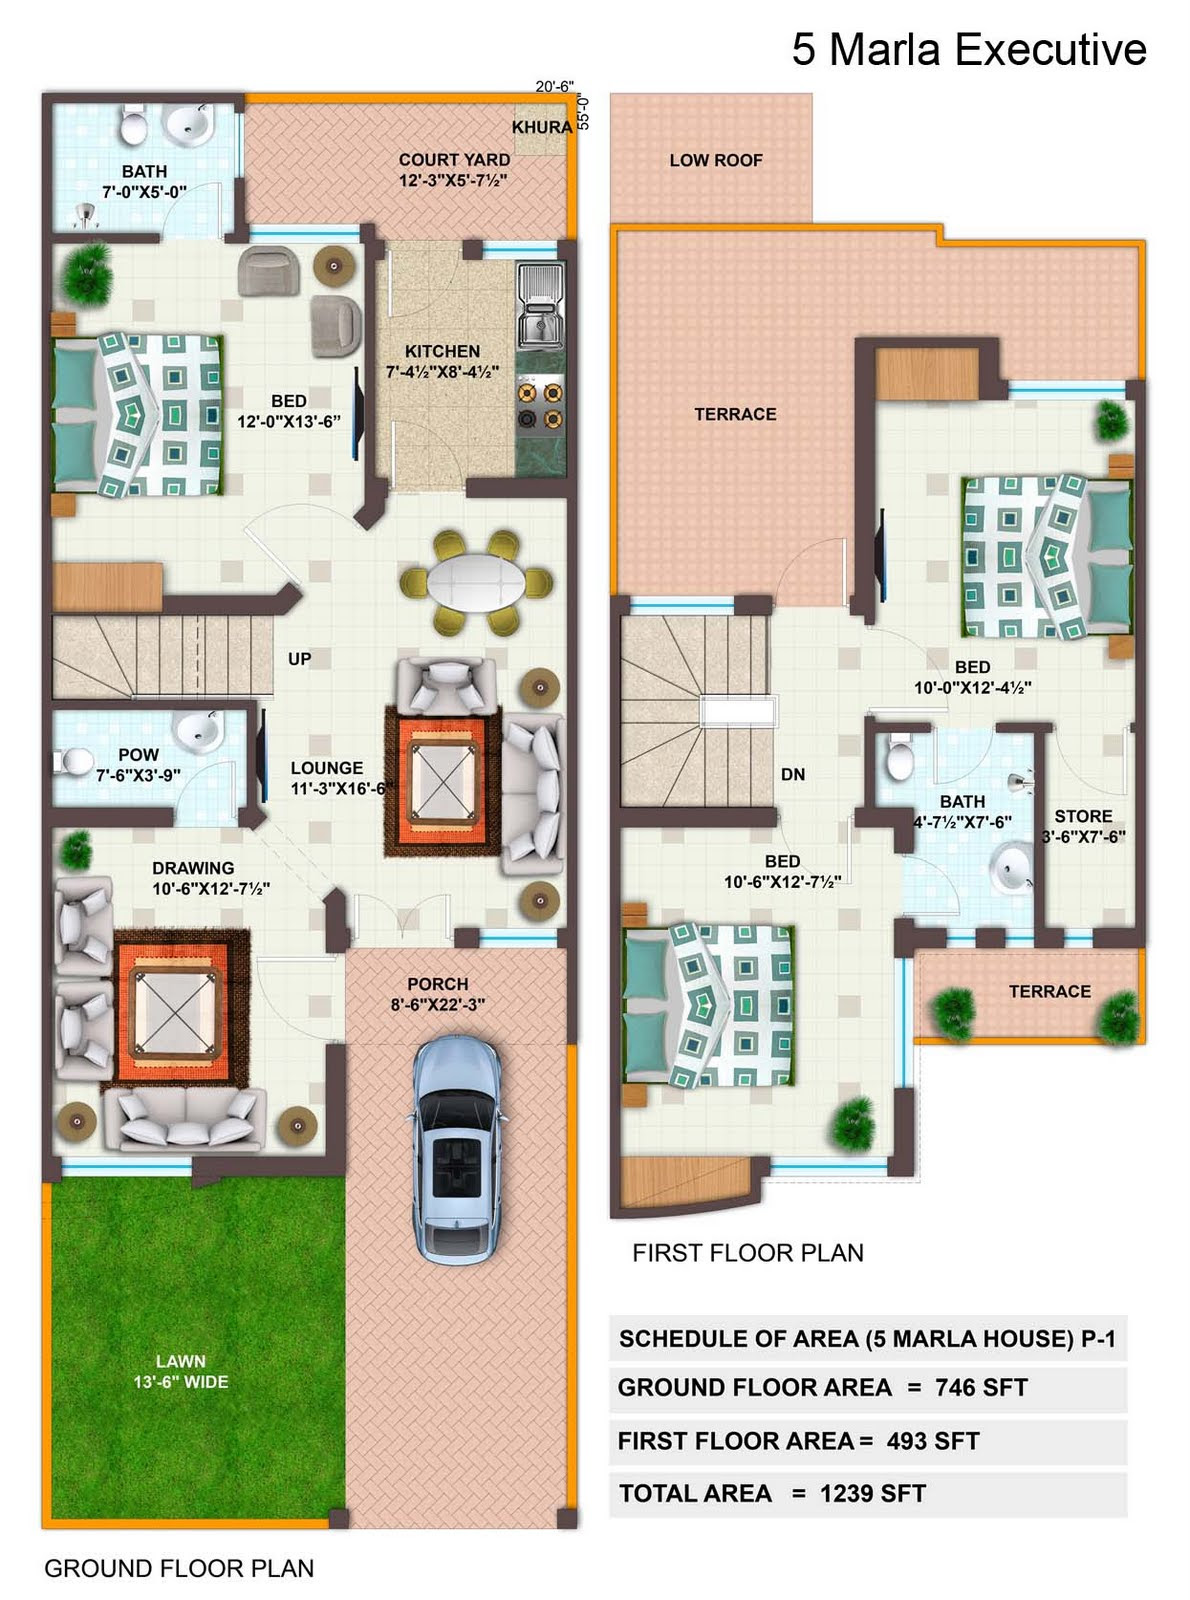 Mj oblíbený dom 5 Marla house floor plan